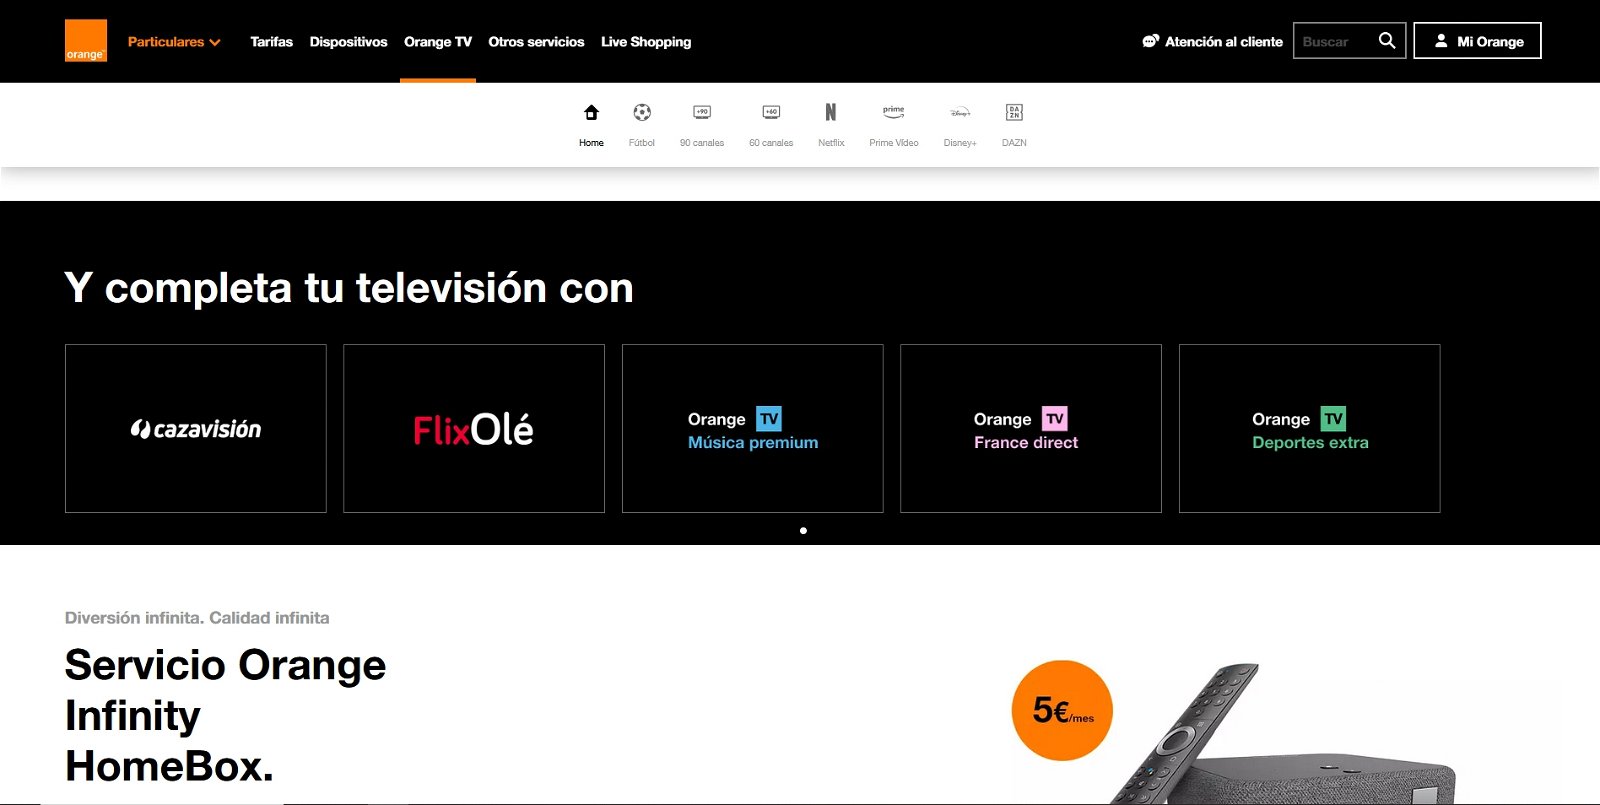 Adiós a las IPTV: canales deportivos gratuitos con la nueva oferta  televisiva de Orange TV en España